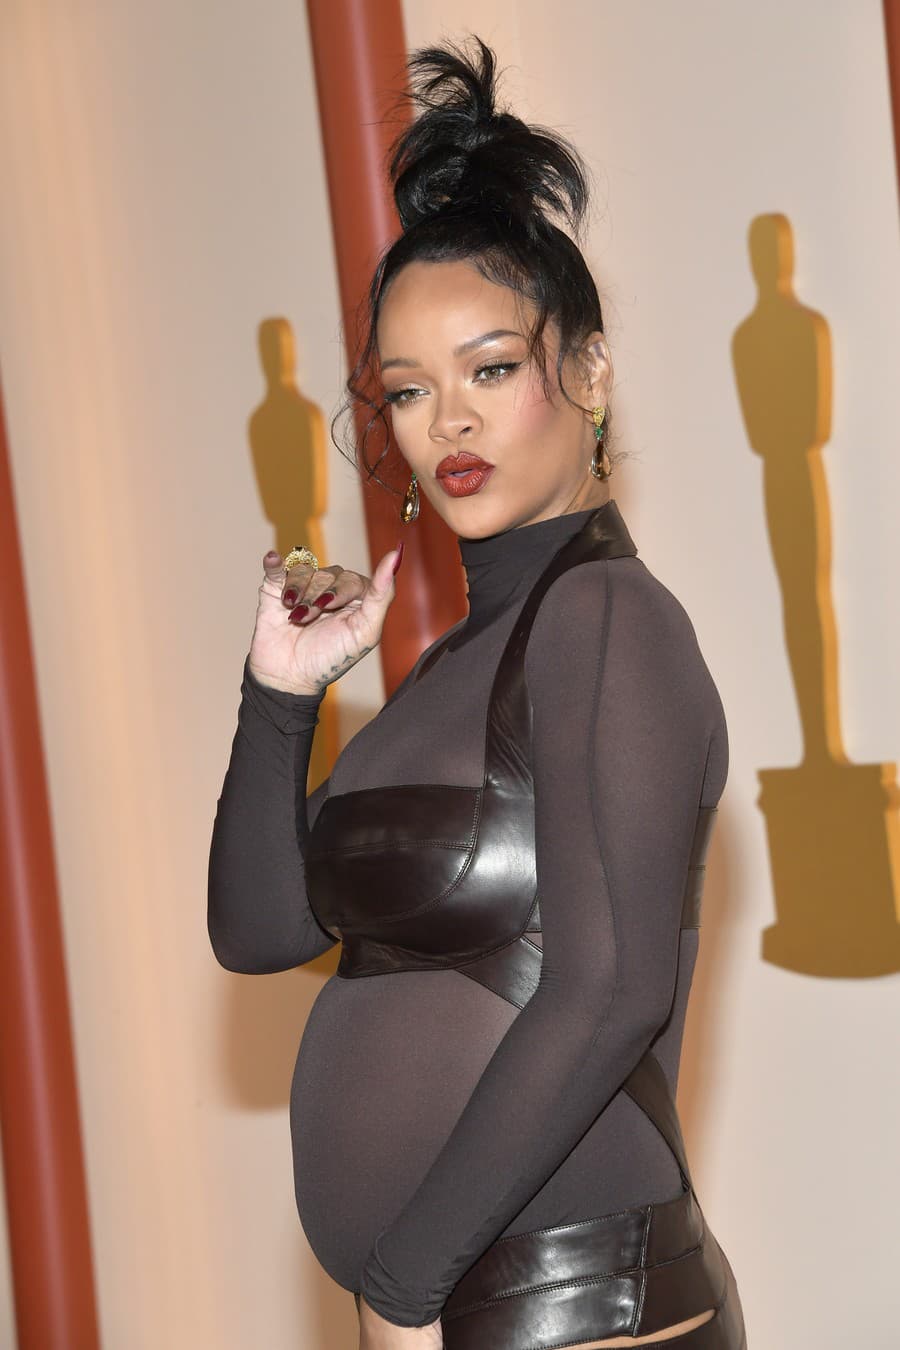 Tehotná speváčka Rihanna.